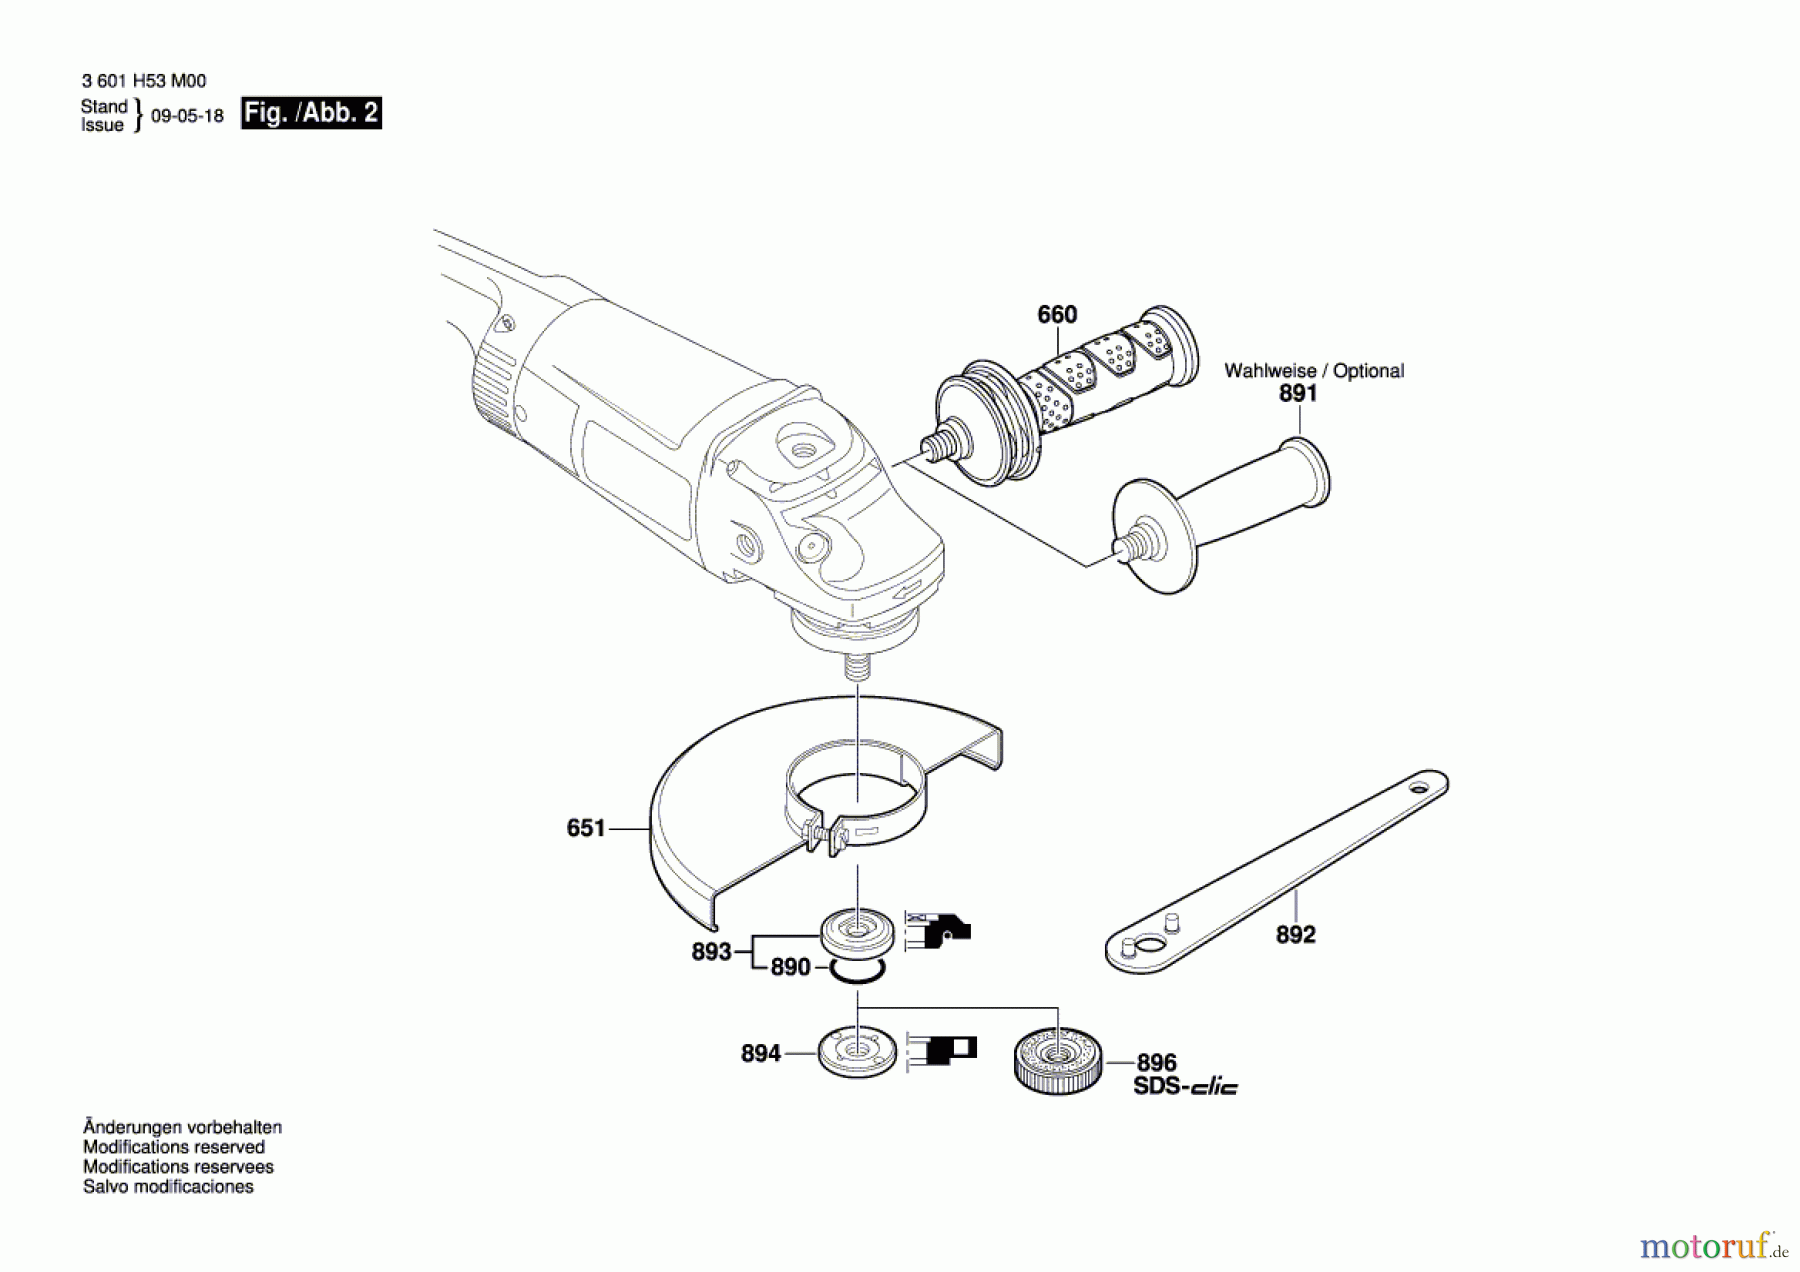  Bosch Werkzeug Winkelschleifer GWS 24-180 JH Seite 2